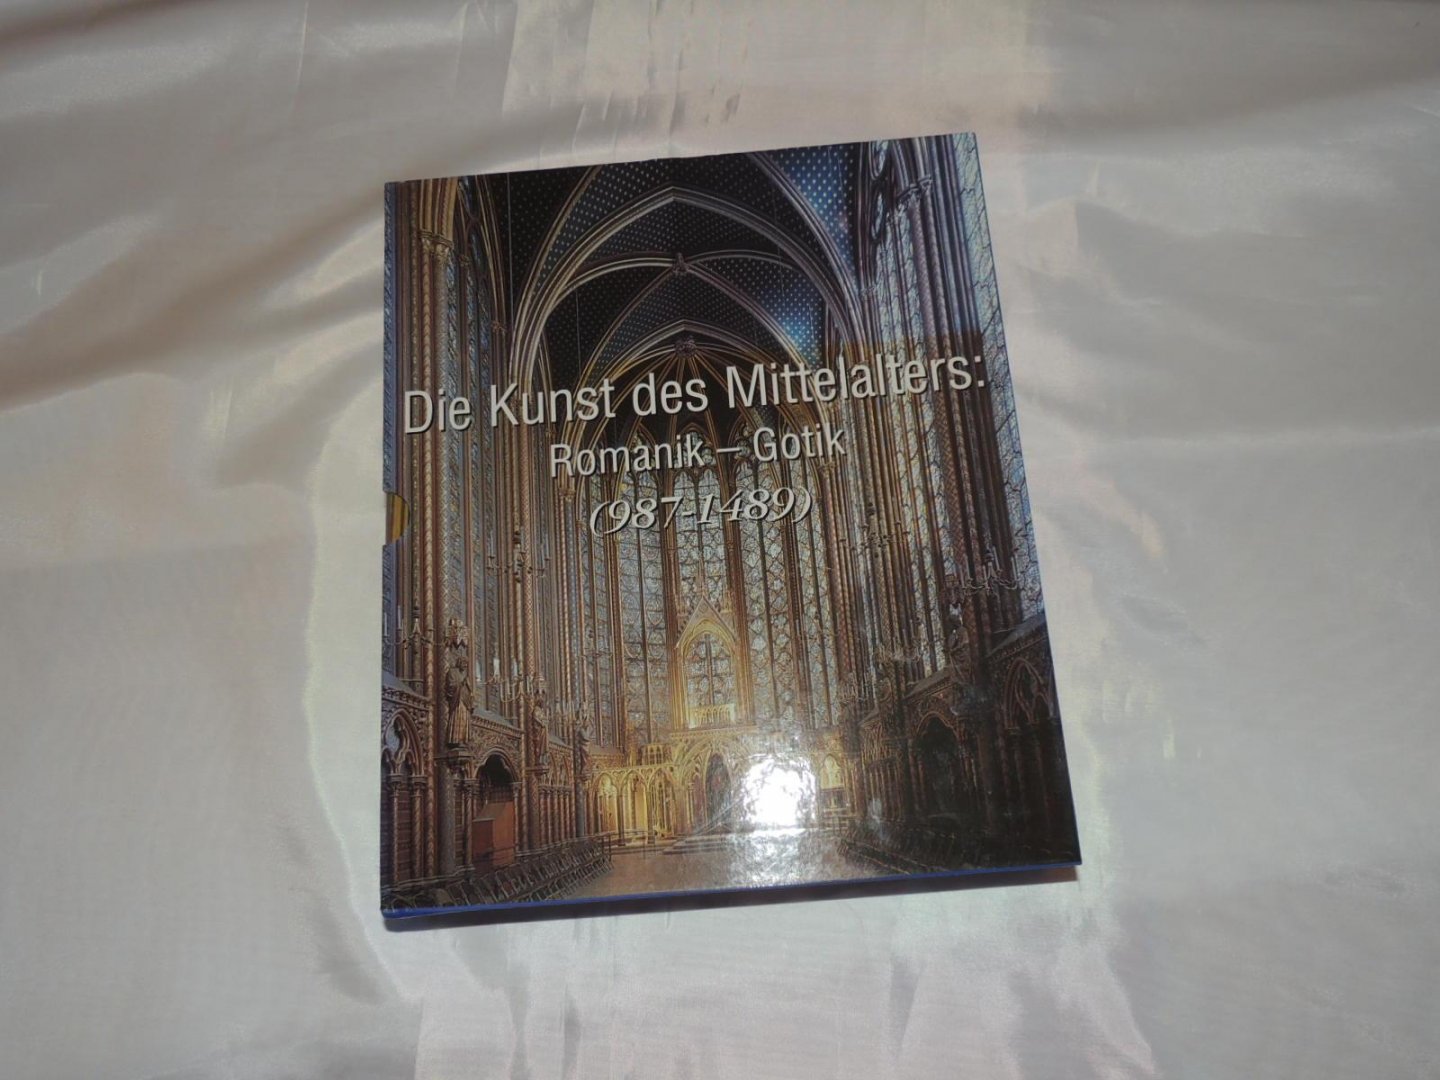 Victoria Charles, Klaus H. Carl - Die Kunst des Mittelalters. Romanik - Gotik (987 - 1489).